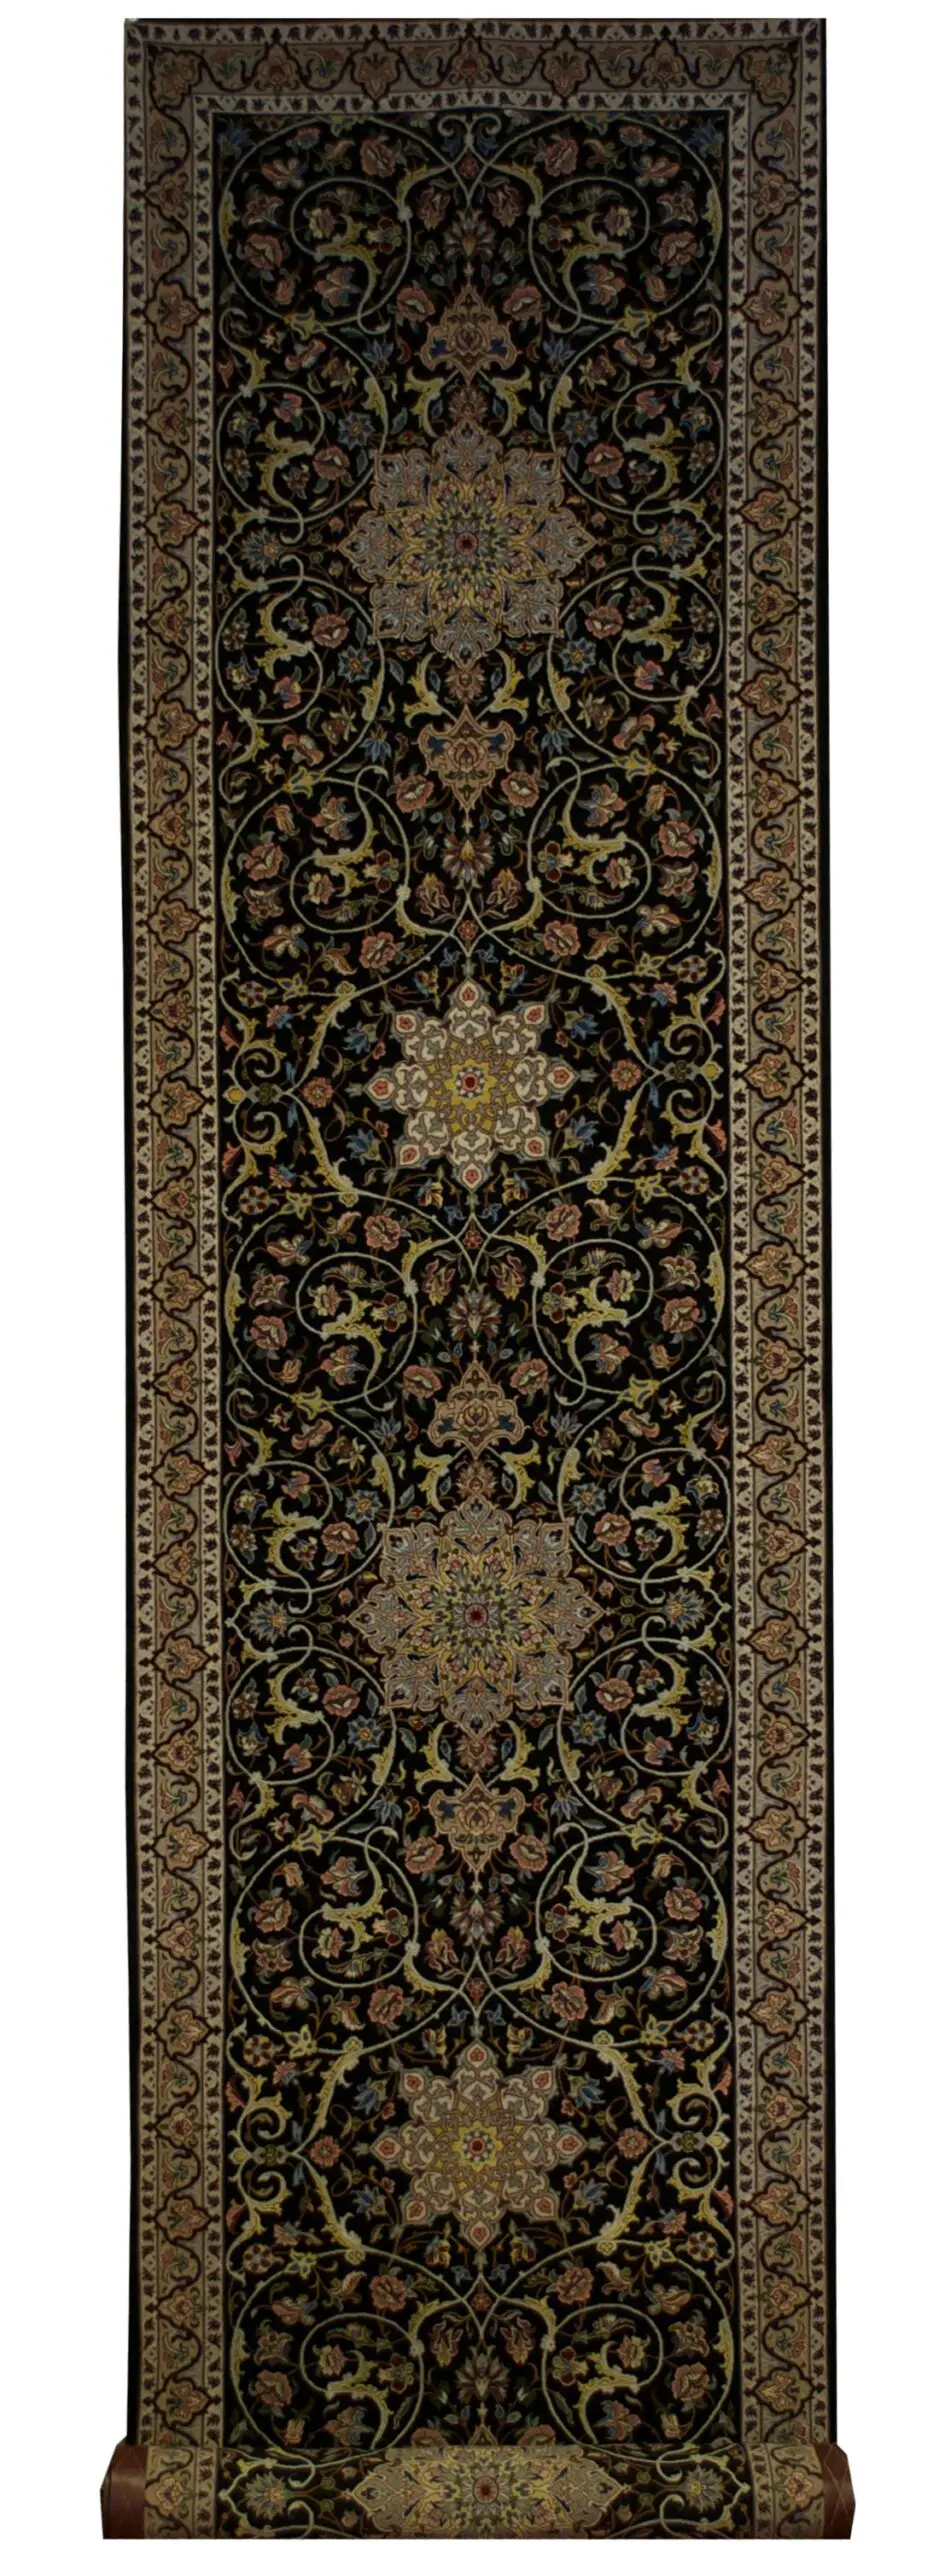 Persian Esfahan runner 2' 10" x 12' 6" - Shabahang Royal Carpet